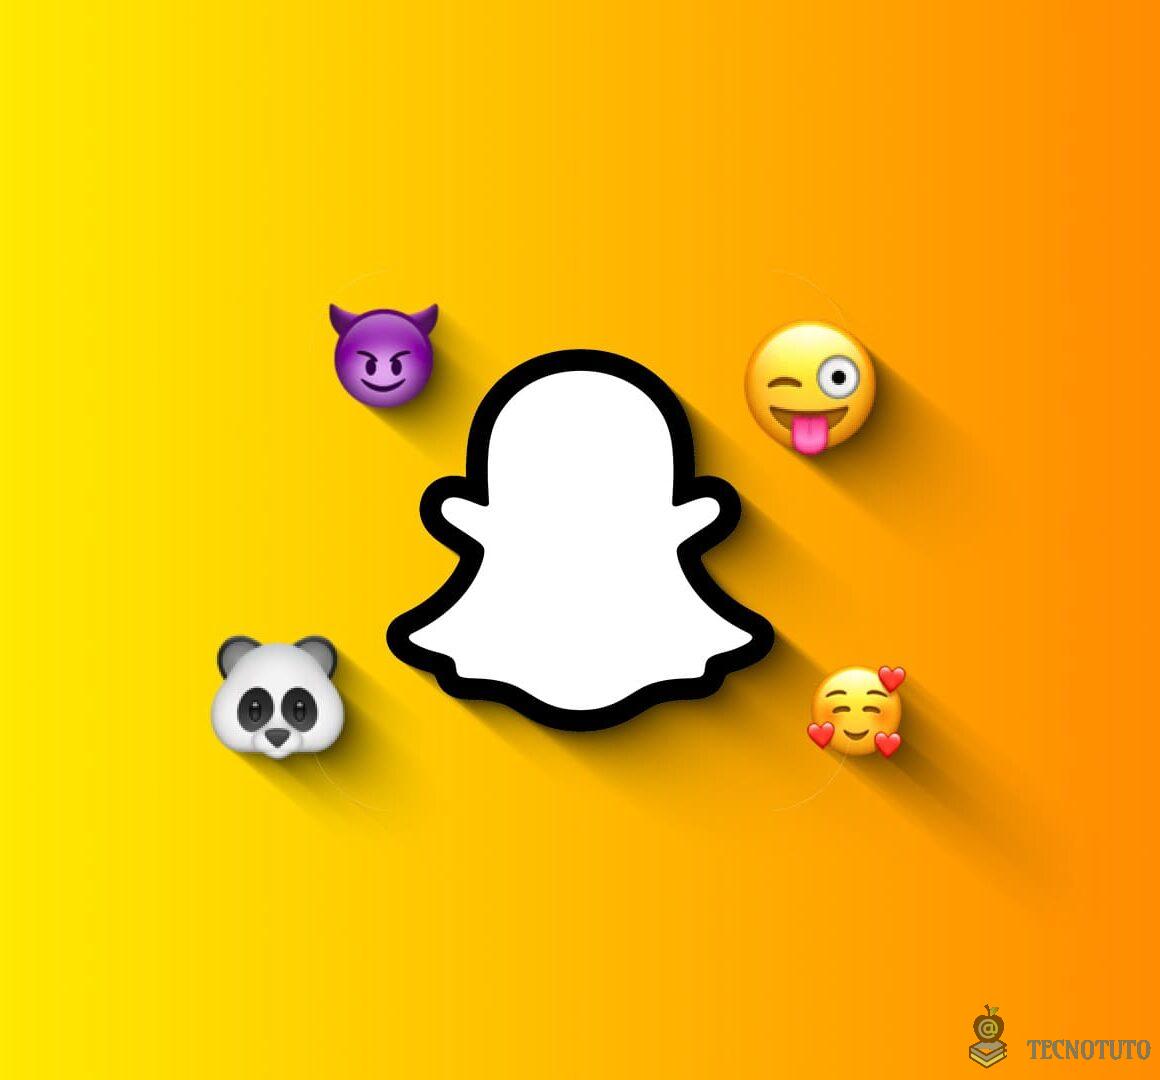 1695117264 Como cambiar los emojis de amigos en Snapchat.jpg